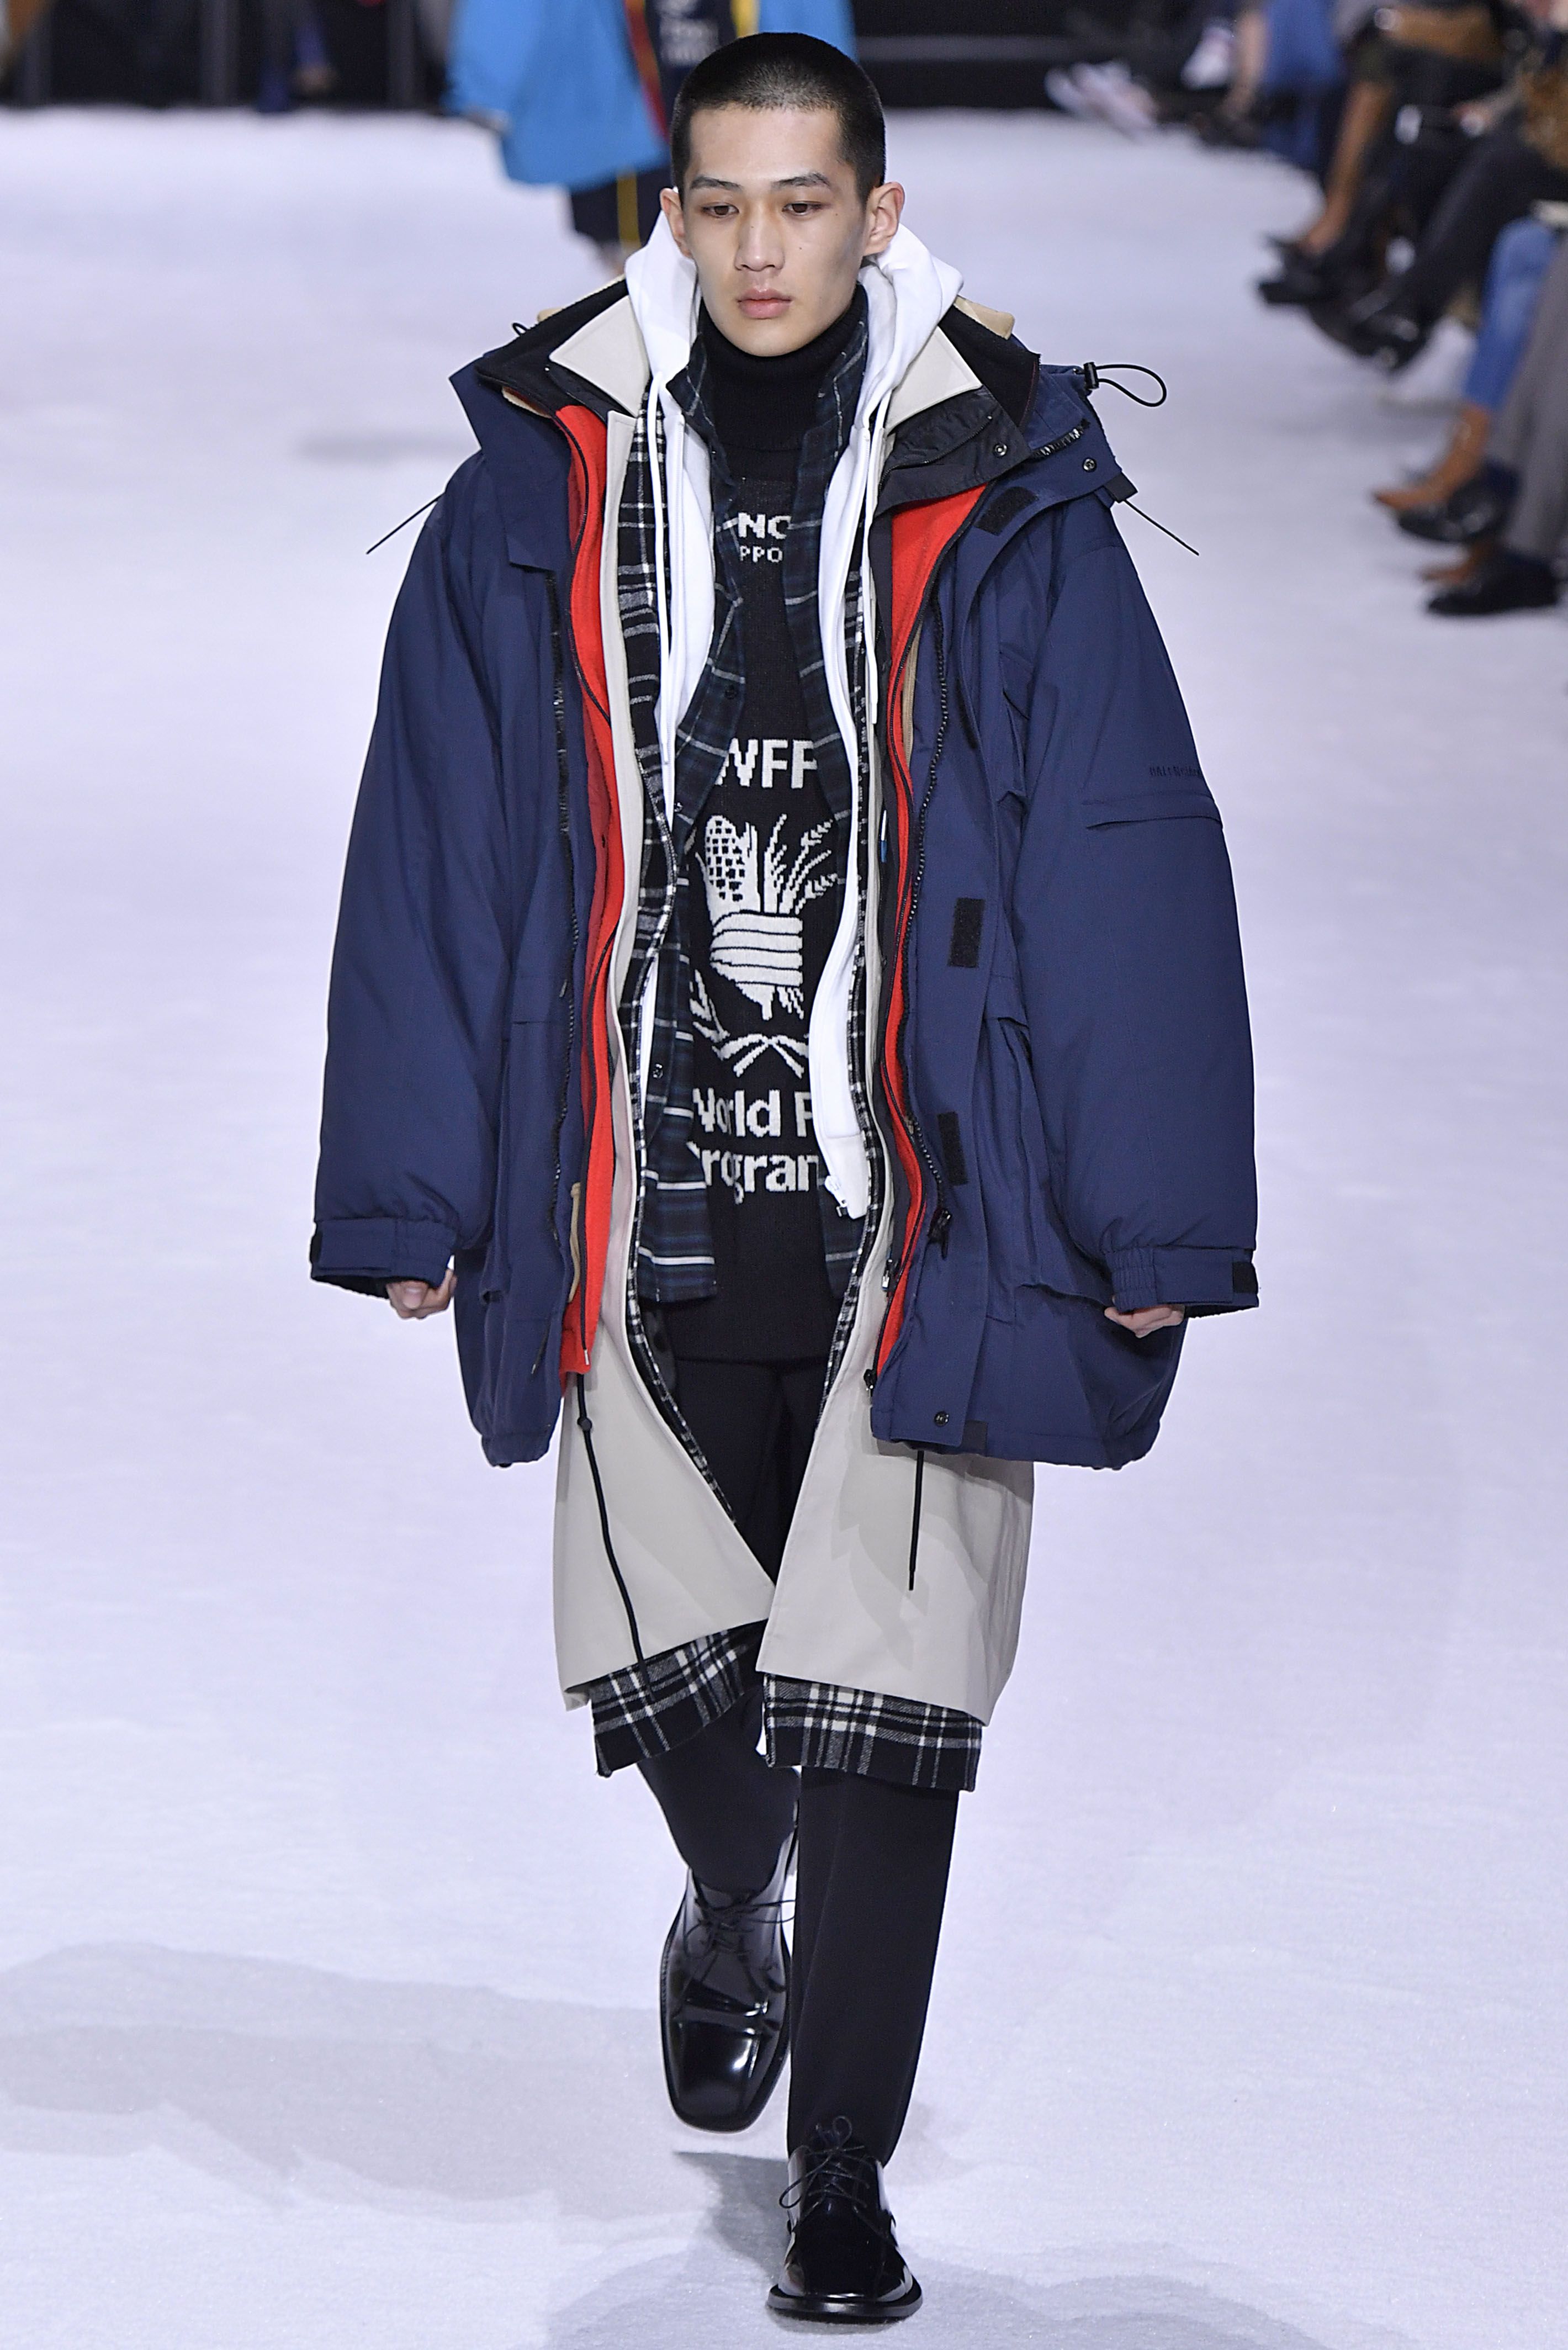 Balenciaga's $9,000 Layered Coat at Paris Fashion Week Reminds